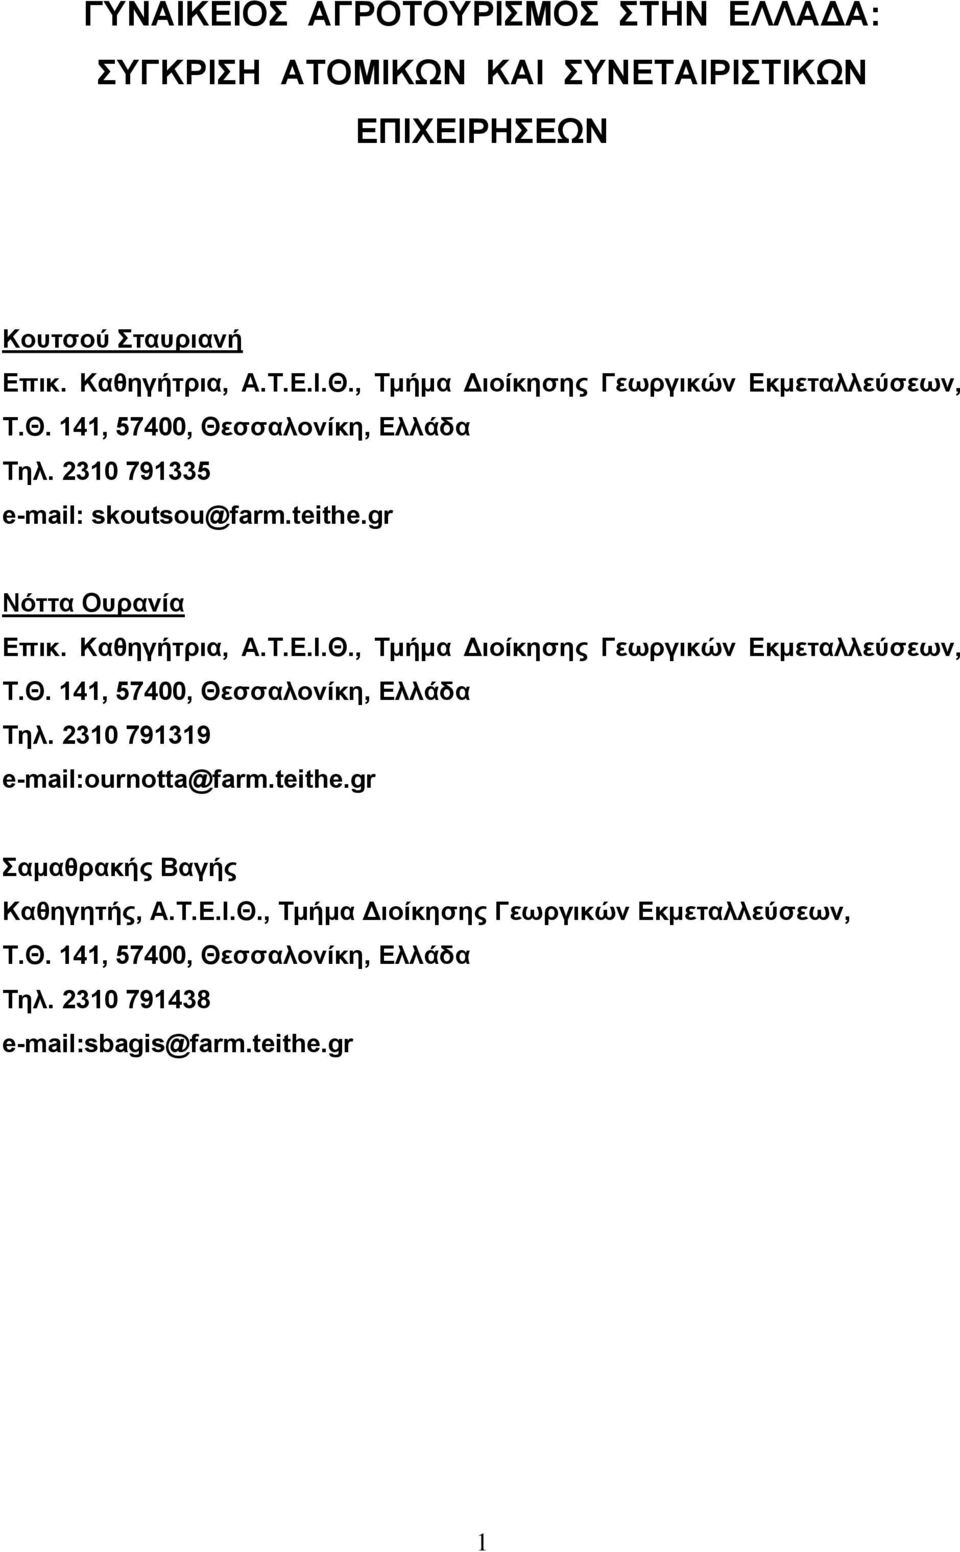 Καθηγήτρια, Α.Τ.Ε.Ι.Θ., Τμήμα Διοίκησης Γεωργικών Εκμεταλλεύσεων, Τ.Θ. 141, 57400, Θεσσαλονίκη, Ελλάδα Τηλ. 2310 791319 e-mail:ournotta@farm.teithe.